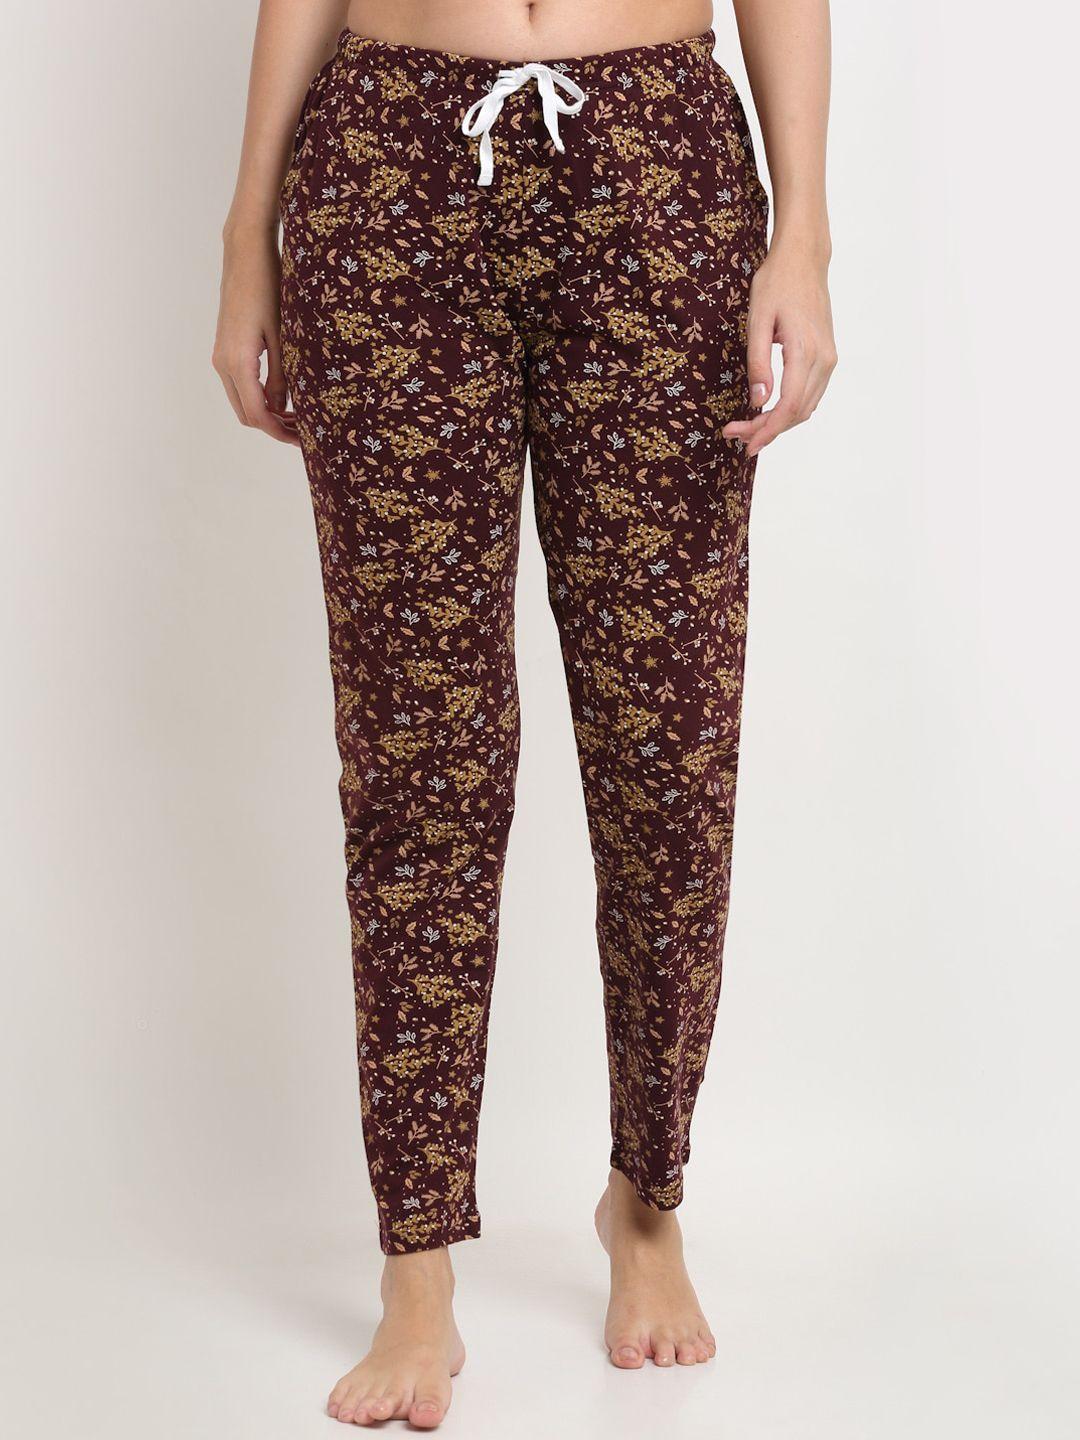 kanvin brown floral printed lounge pants